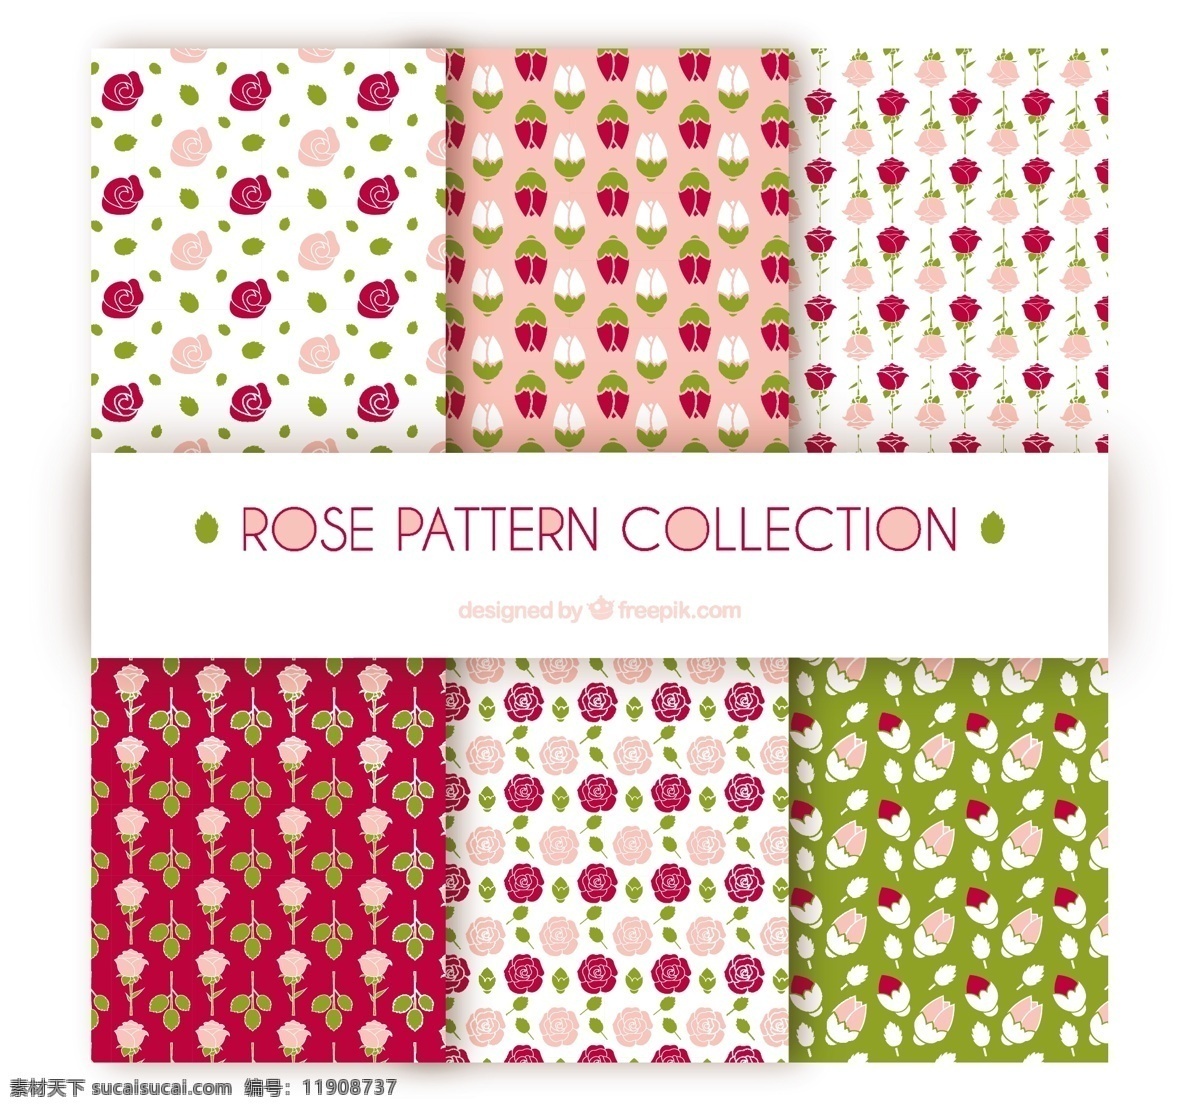 六 种 玫瑰 图案 收藏 背景 花卉 自然 花卉背景 花卉图案 春天 颜色 平板 植物 装饰